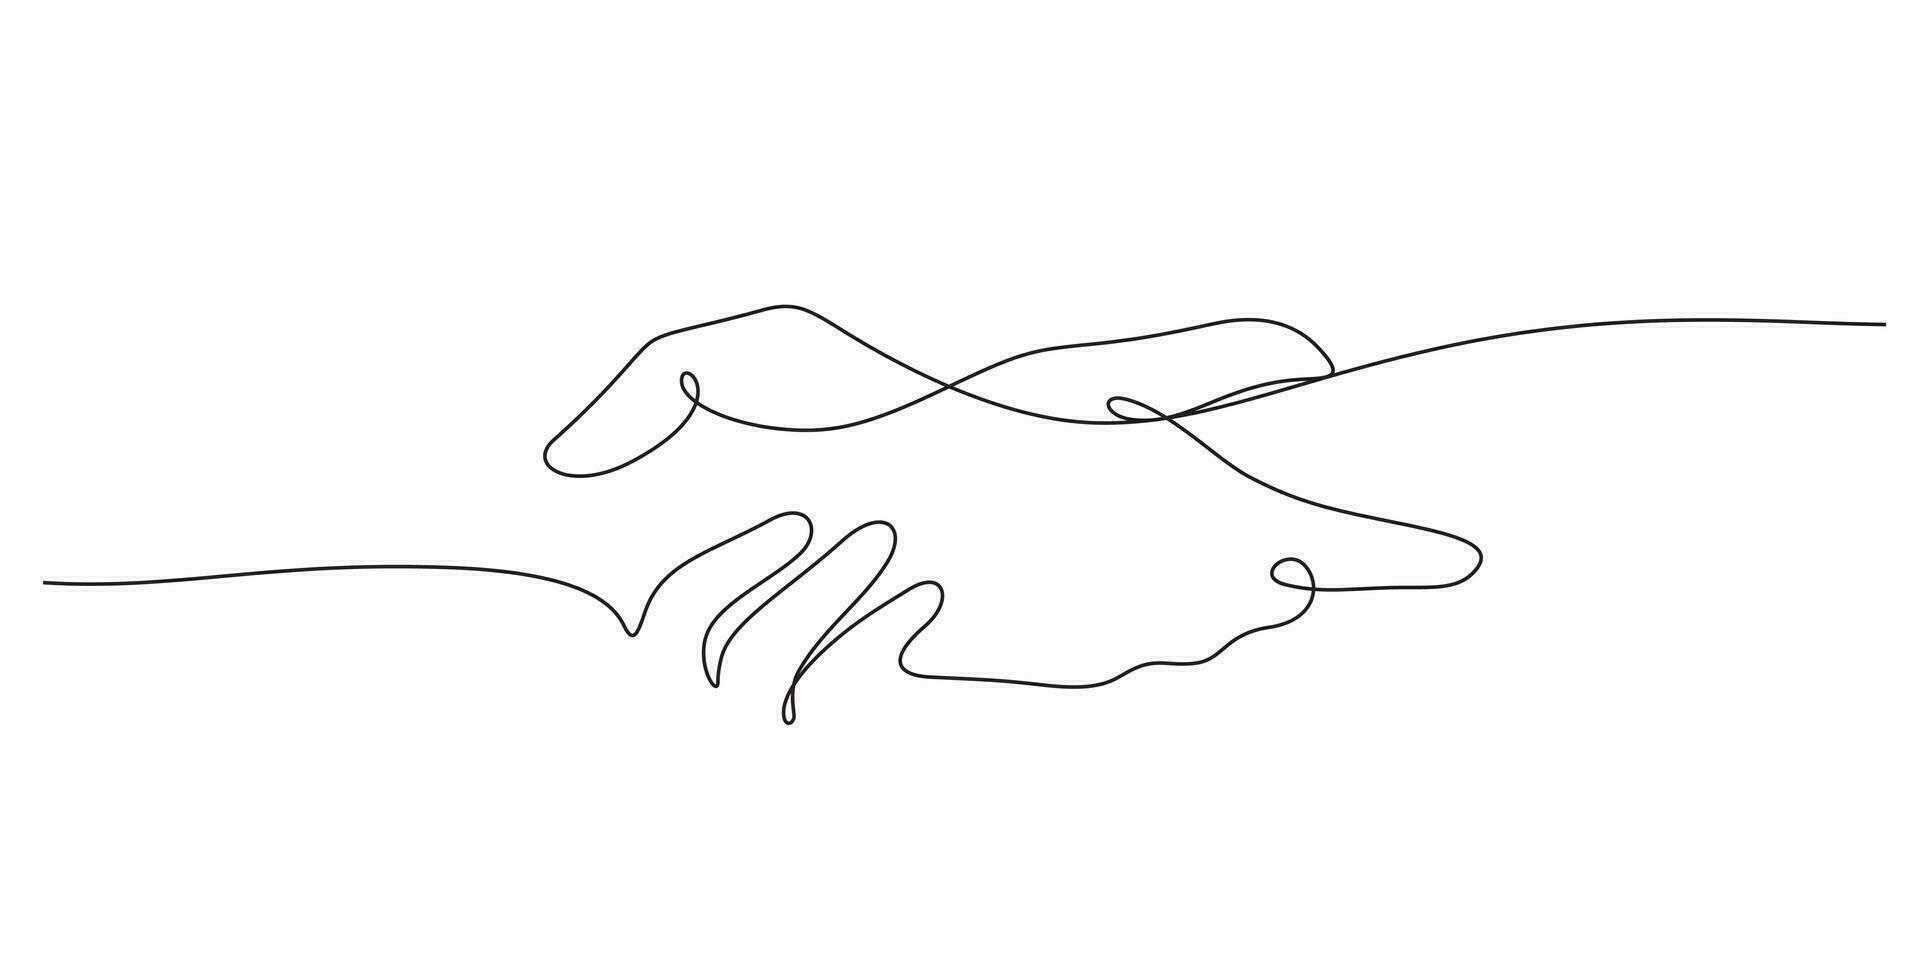 Ayudar mano continuo línea dibujo minimalista concepto vector